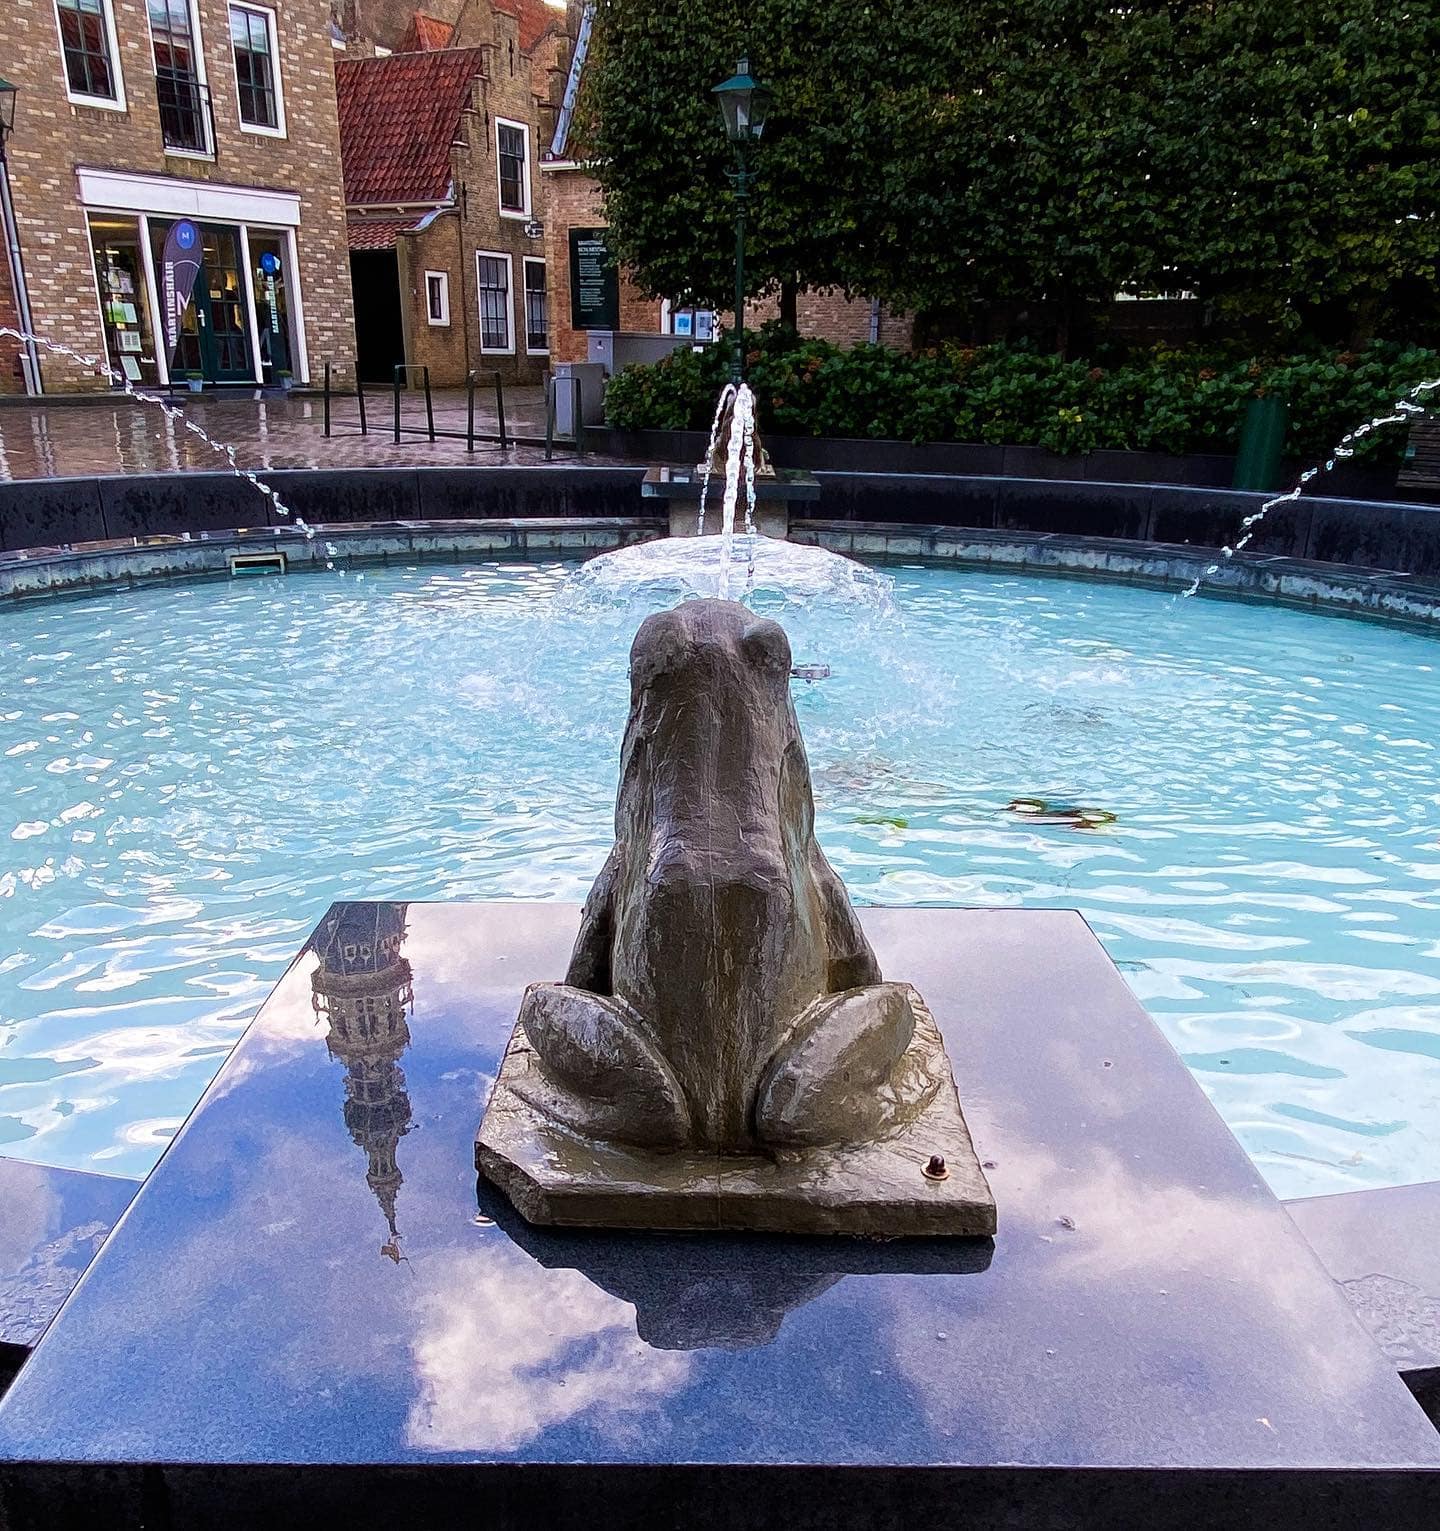 𝗥𝗘𝗙𝗟𝗘𝗖𝗧𝗜𝗘
Als Neptunus een kijkje in de fontein komt nemen.

#groetenuitzierikzee